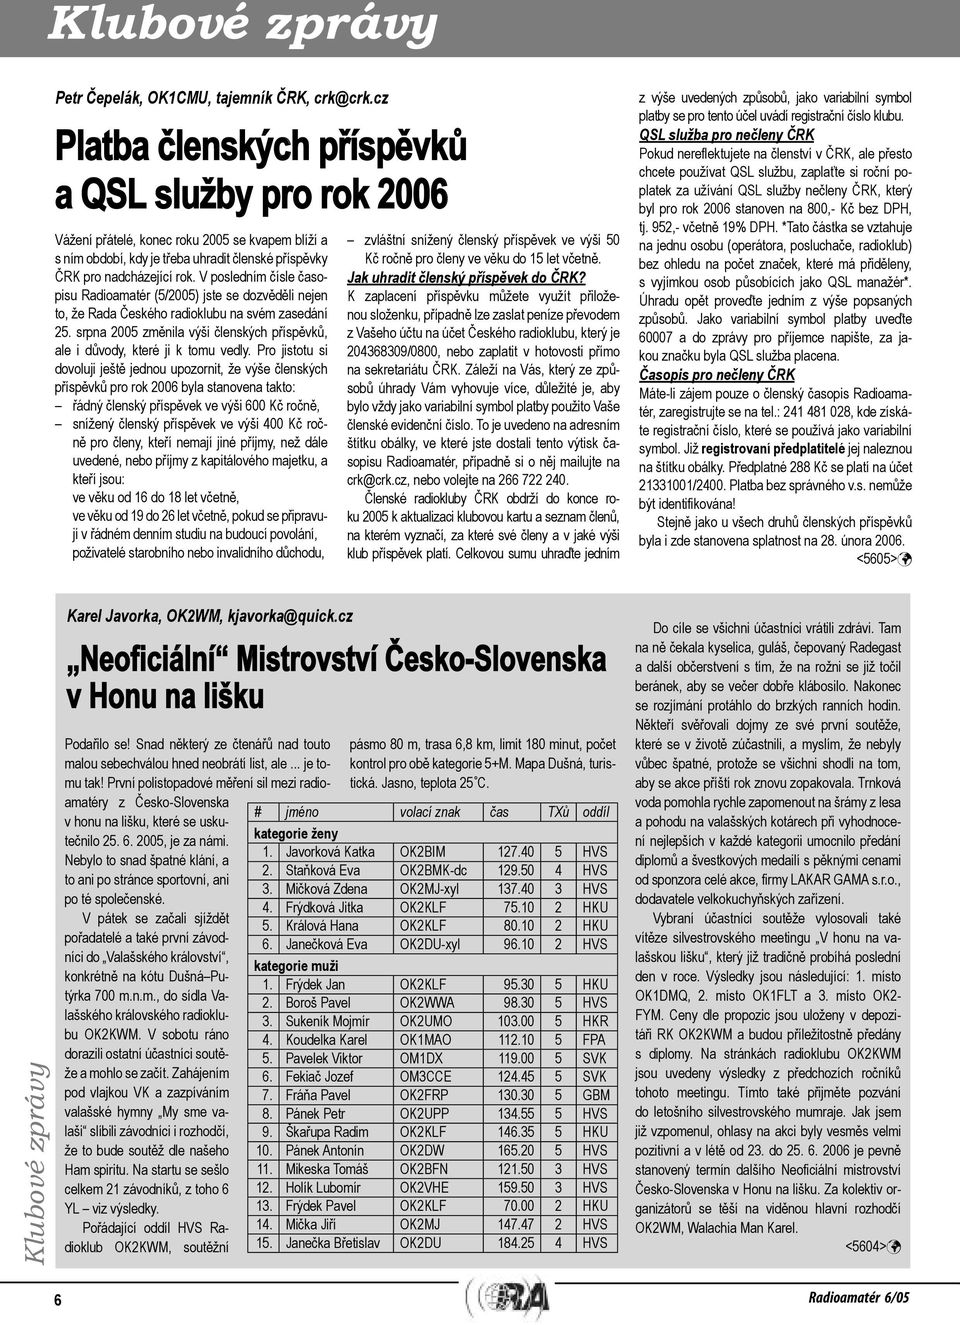 V posledním čísle časopisu Radioamatér (5/2005) jste se dozvěděli nejen to, že Rada Českého radioklubu na svém zasedání 25.